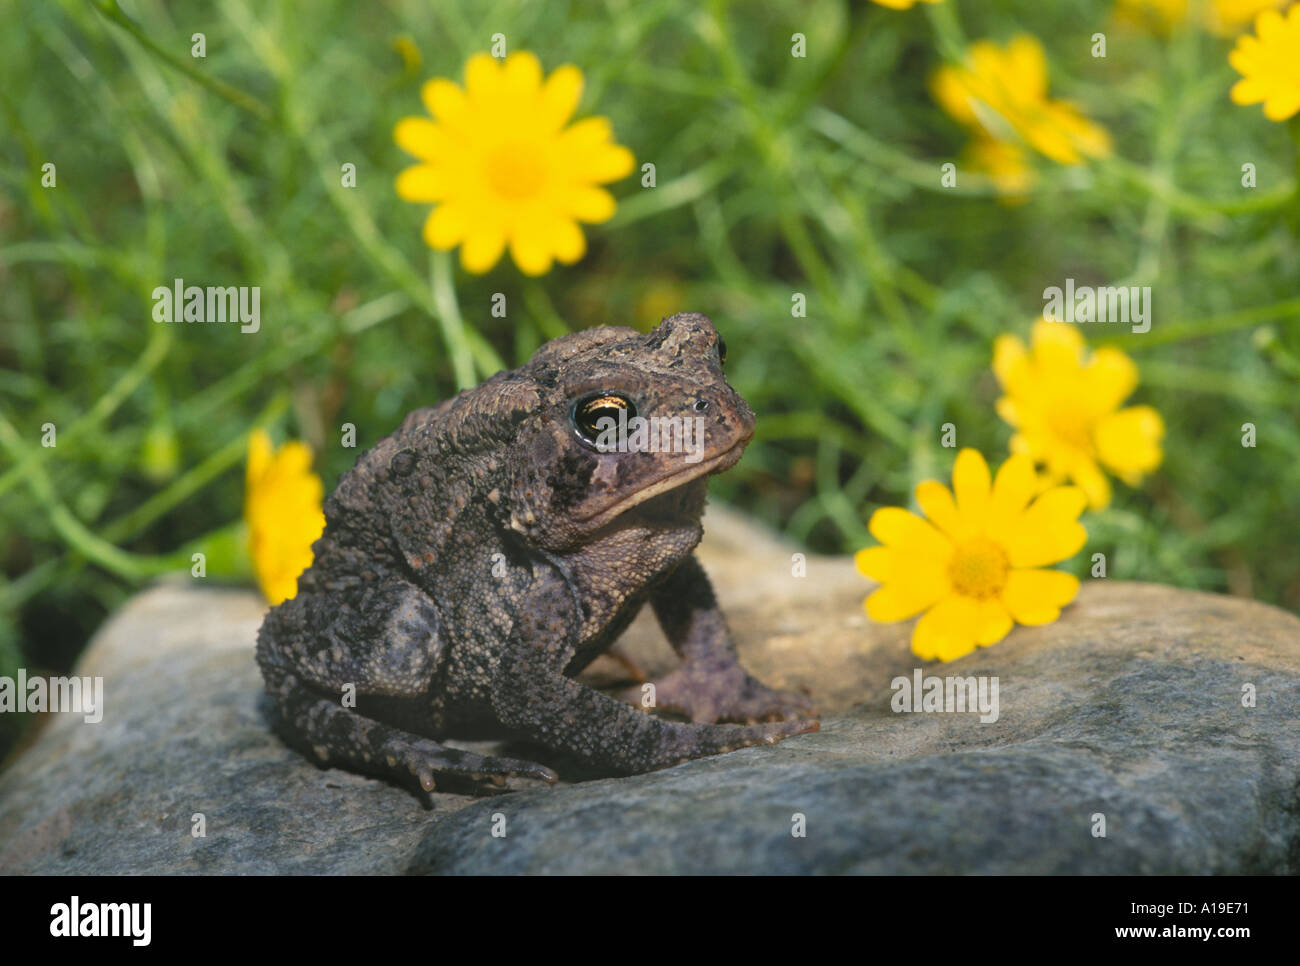 Nachdenklich American toad im Blumengarten sitzt ruhig auf einem Felsen durch leuchtend gelbe Blüten im Sommer umgeben, Midwest USA Stockfoto